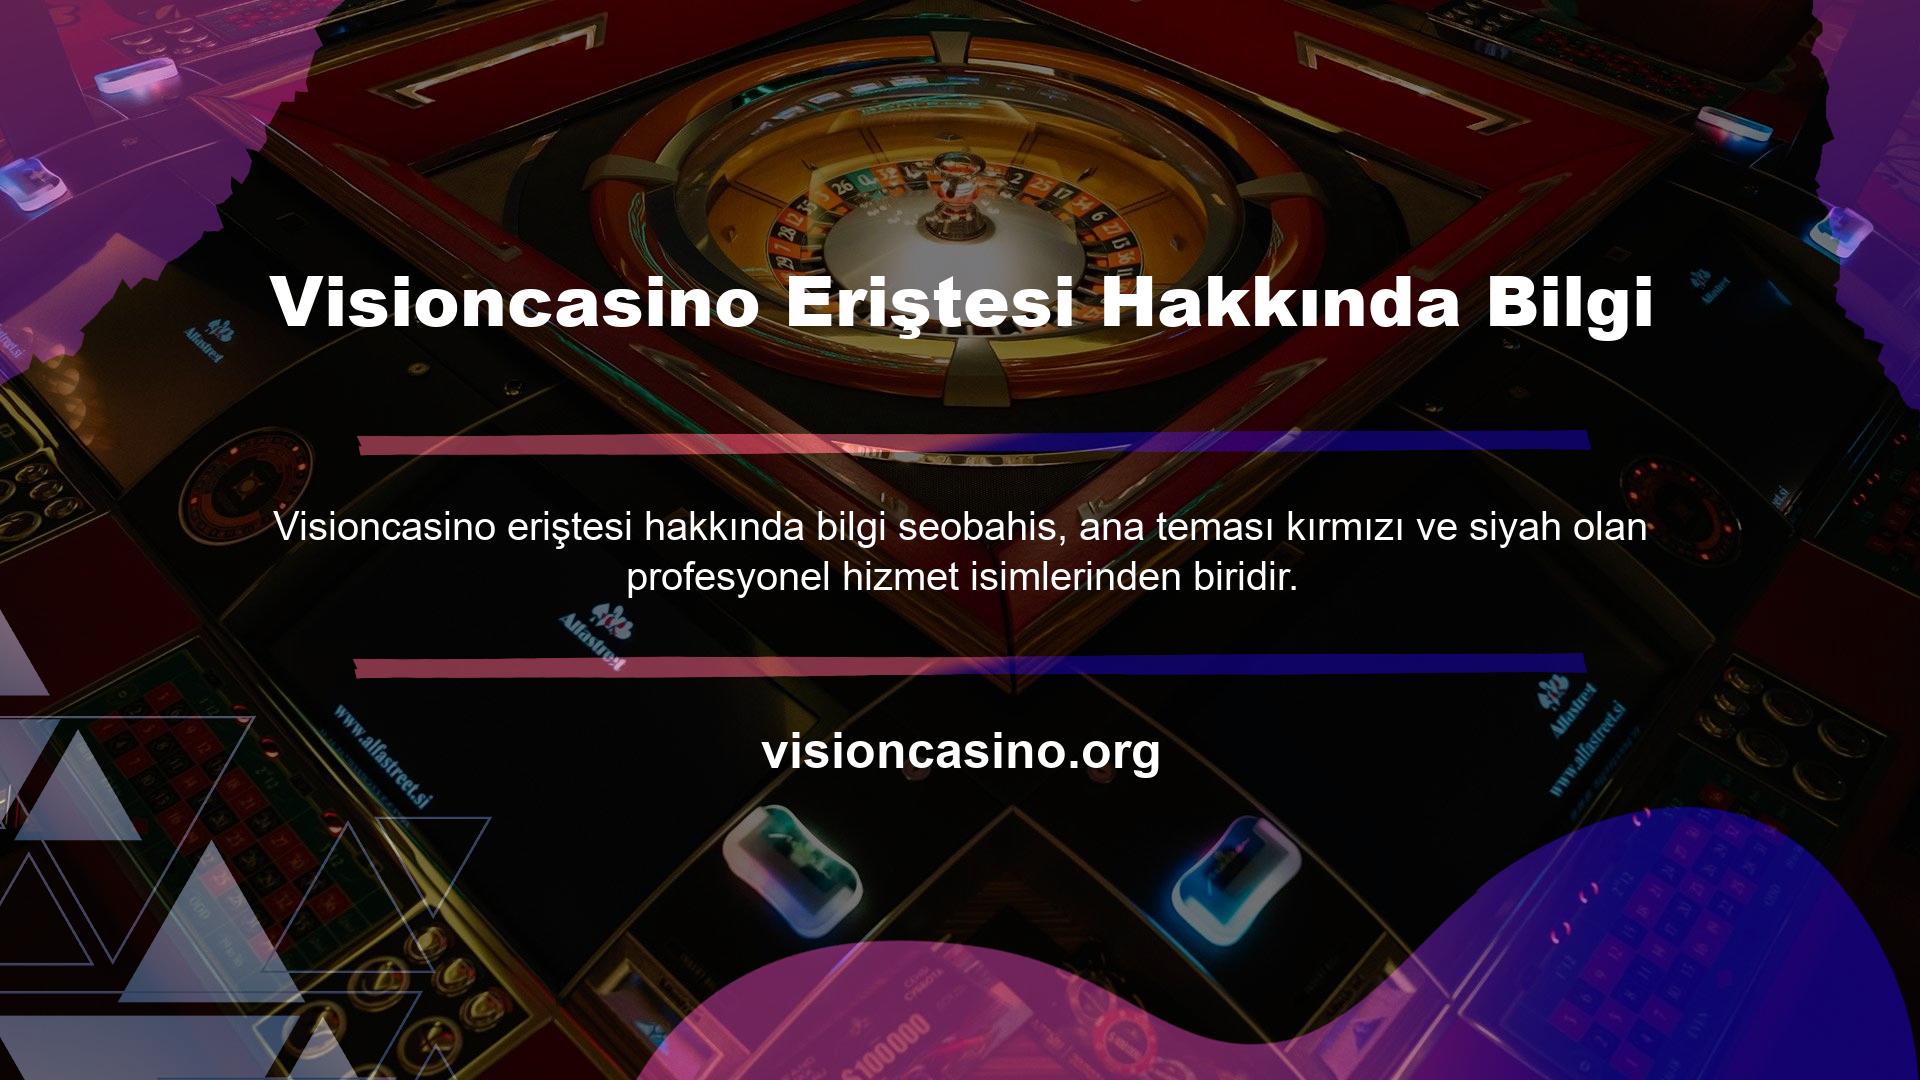 Visioncasino Türkiye'de faaliyet göstermektedir ve yalnızca güvenilirlikle ilgili soruları yanıtlayacaktır